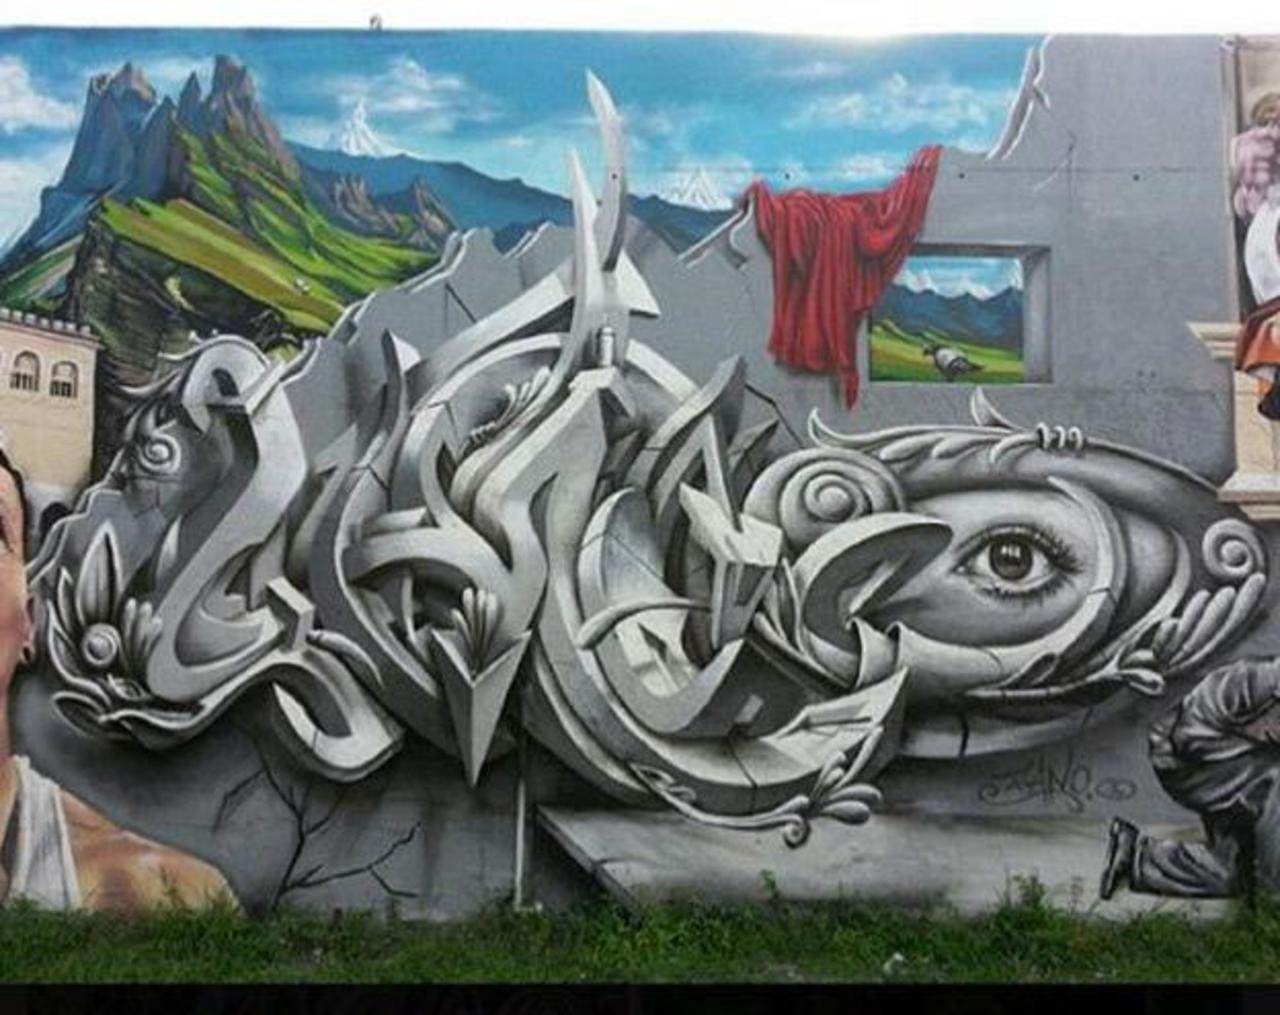 Street Art by Smog One

#art #mural #graffiti #streetart http://t.co/r83s10Z9UF